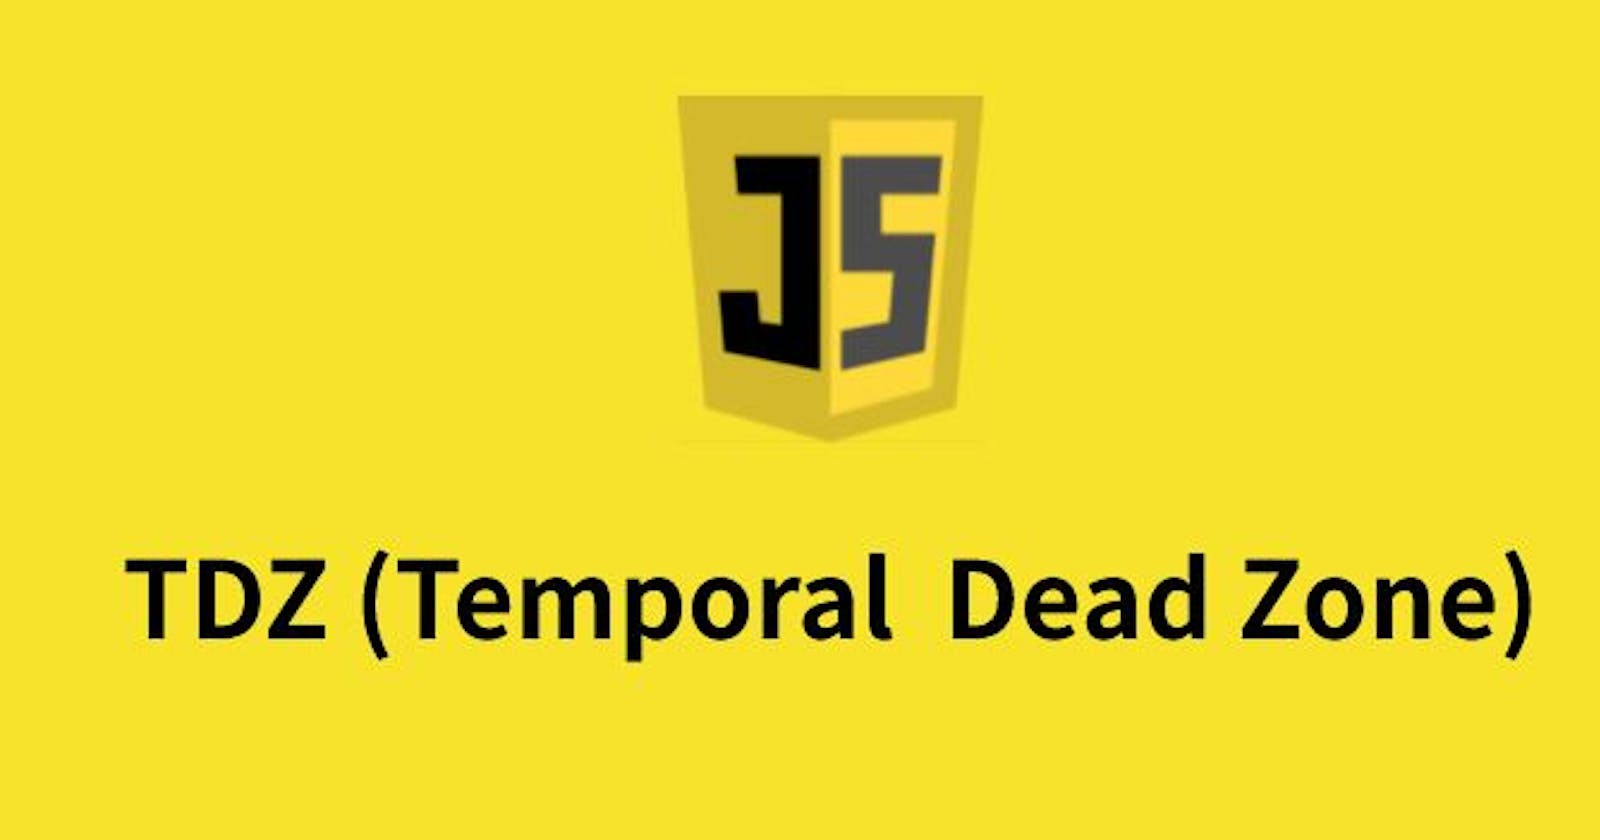 Temporal Dead Zone (TDZ) in JavaScript